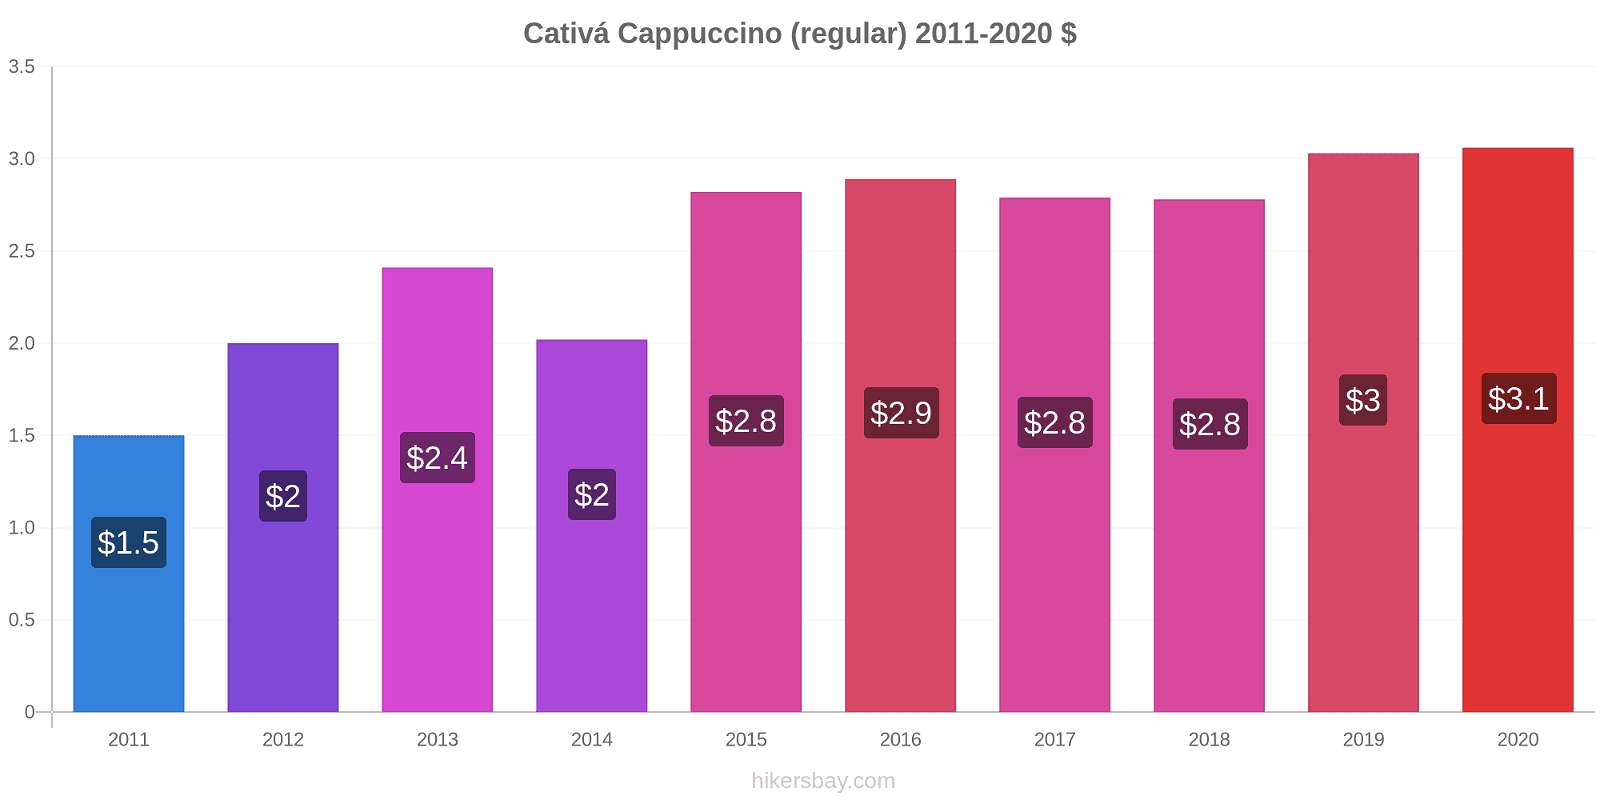 Cativá price changes Cappuccino (regular) hikersbay.com